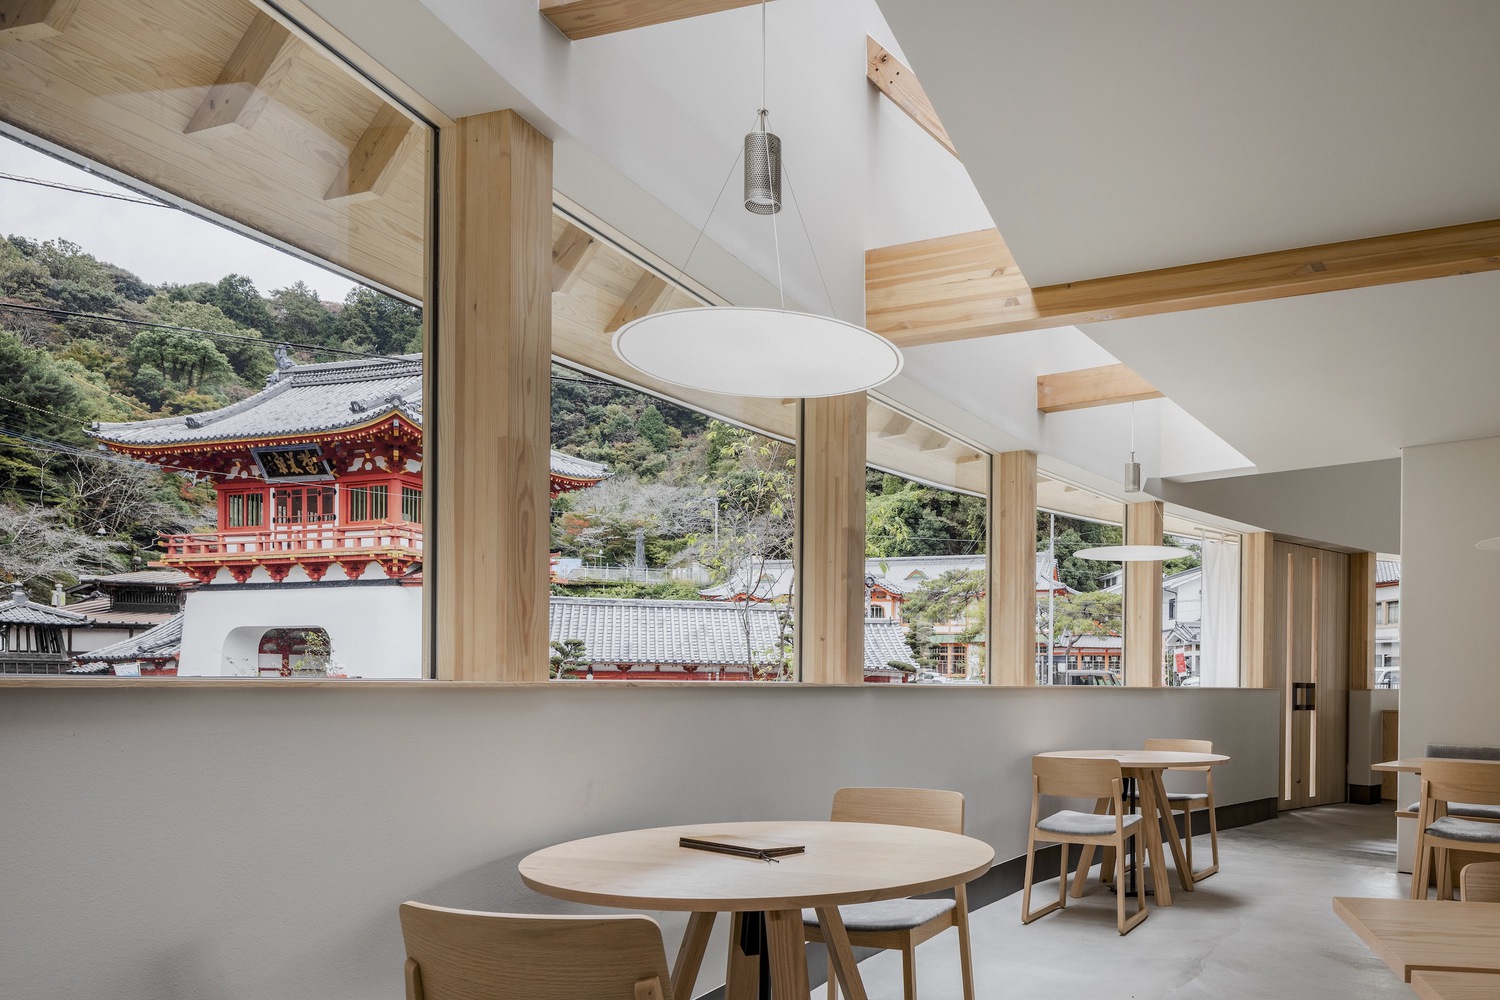 咖啡厅设计方案,咖啡厅装修,休闲餐厅设计,创意咖啡厅设计,餐厅设计,轻食餐厅设计,Keiji Ashizawa Design,430㎡,餐厅&商店